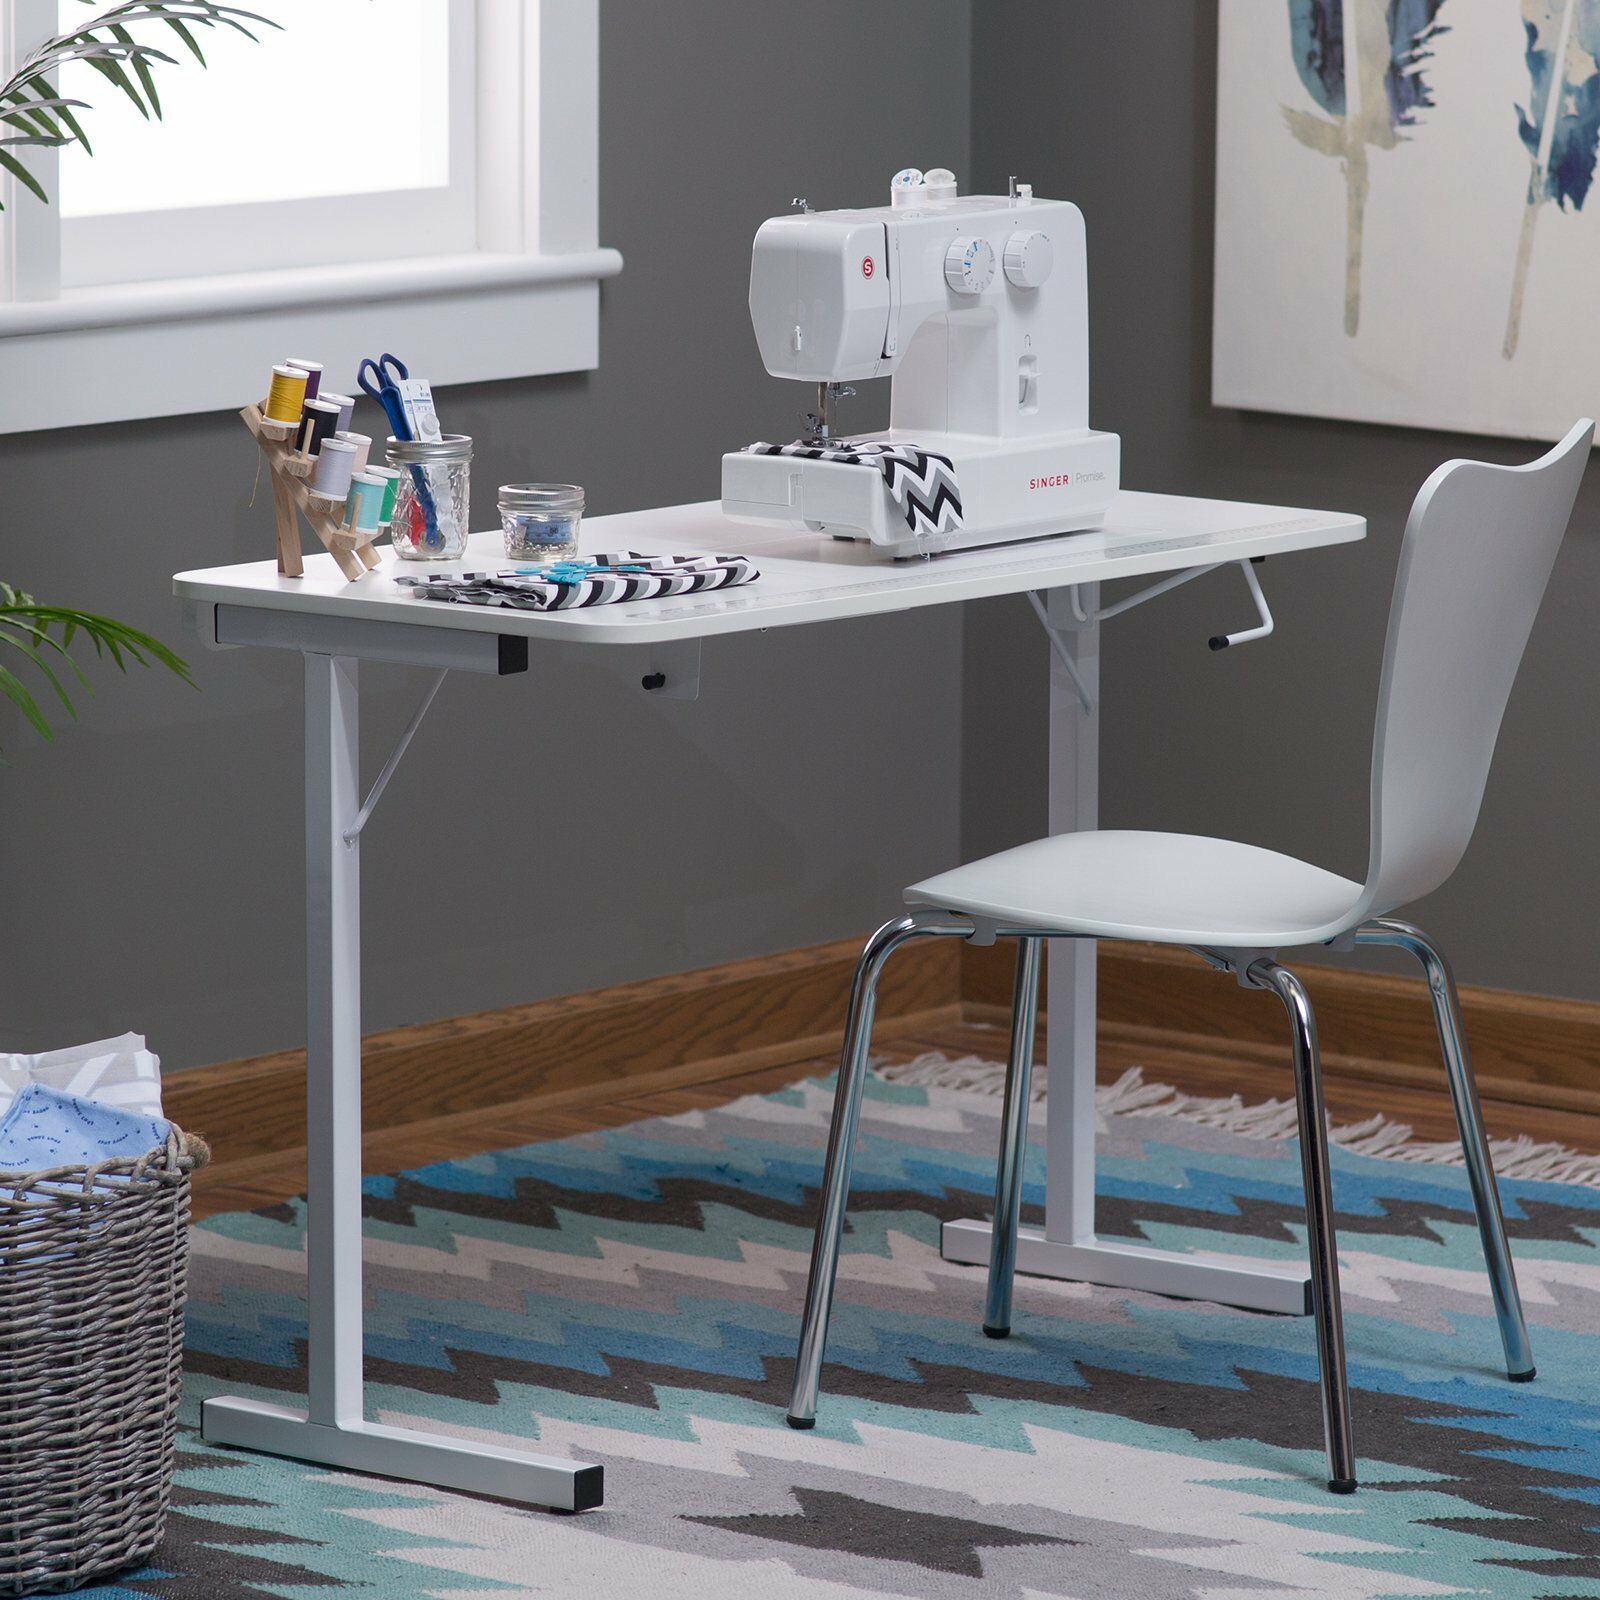 Швейный стол своими руками: домашние проекты с пошаговыми инструкциями